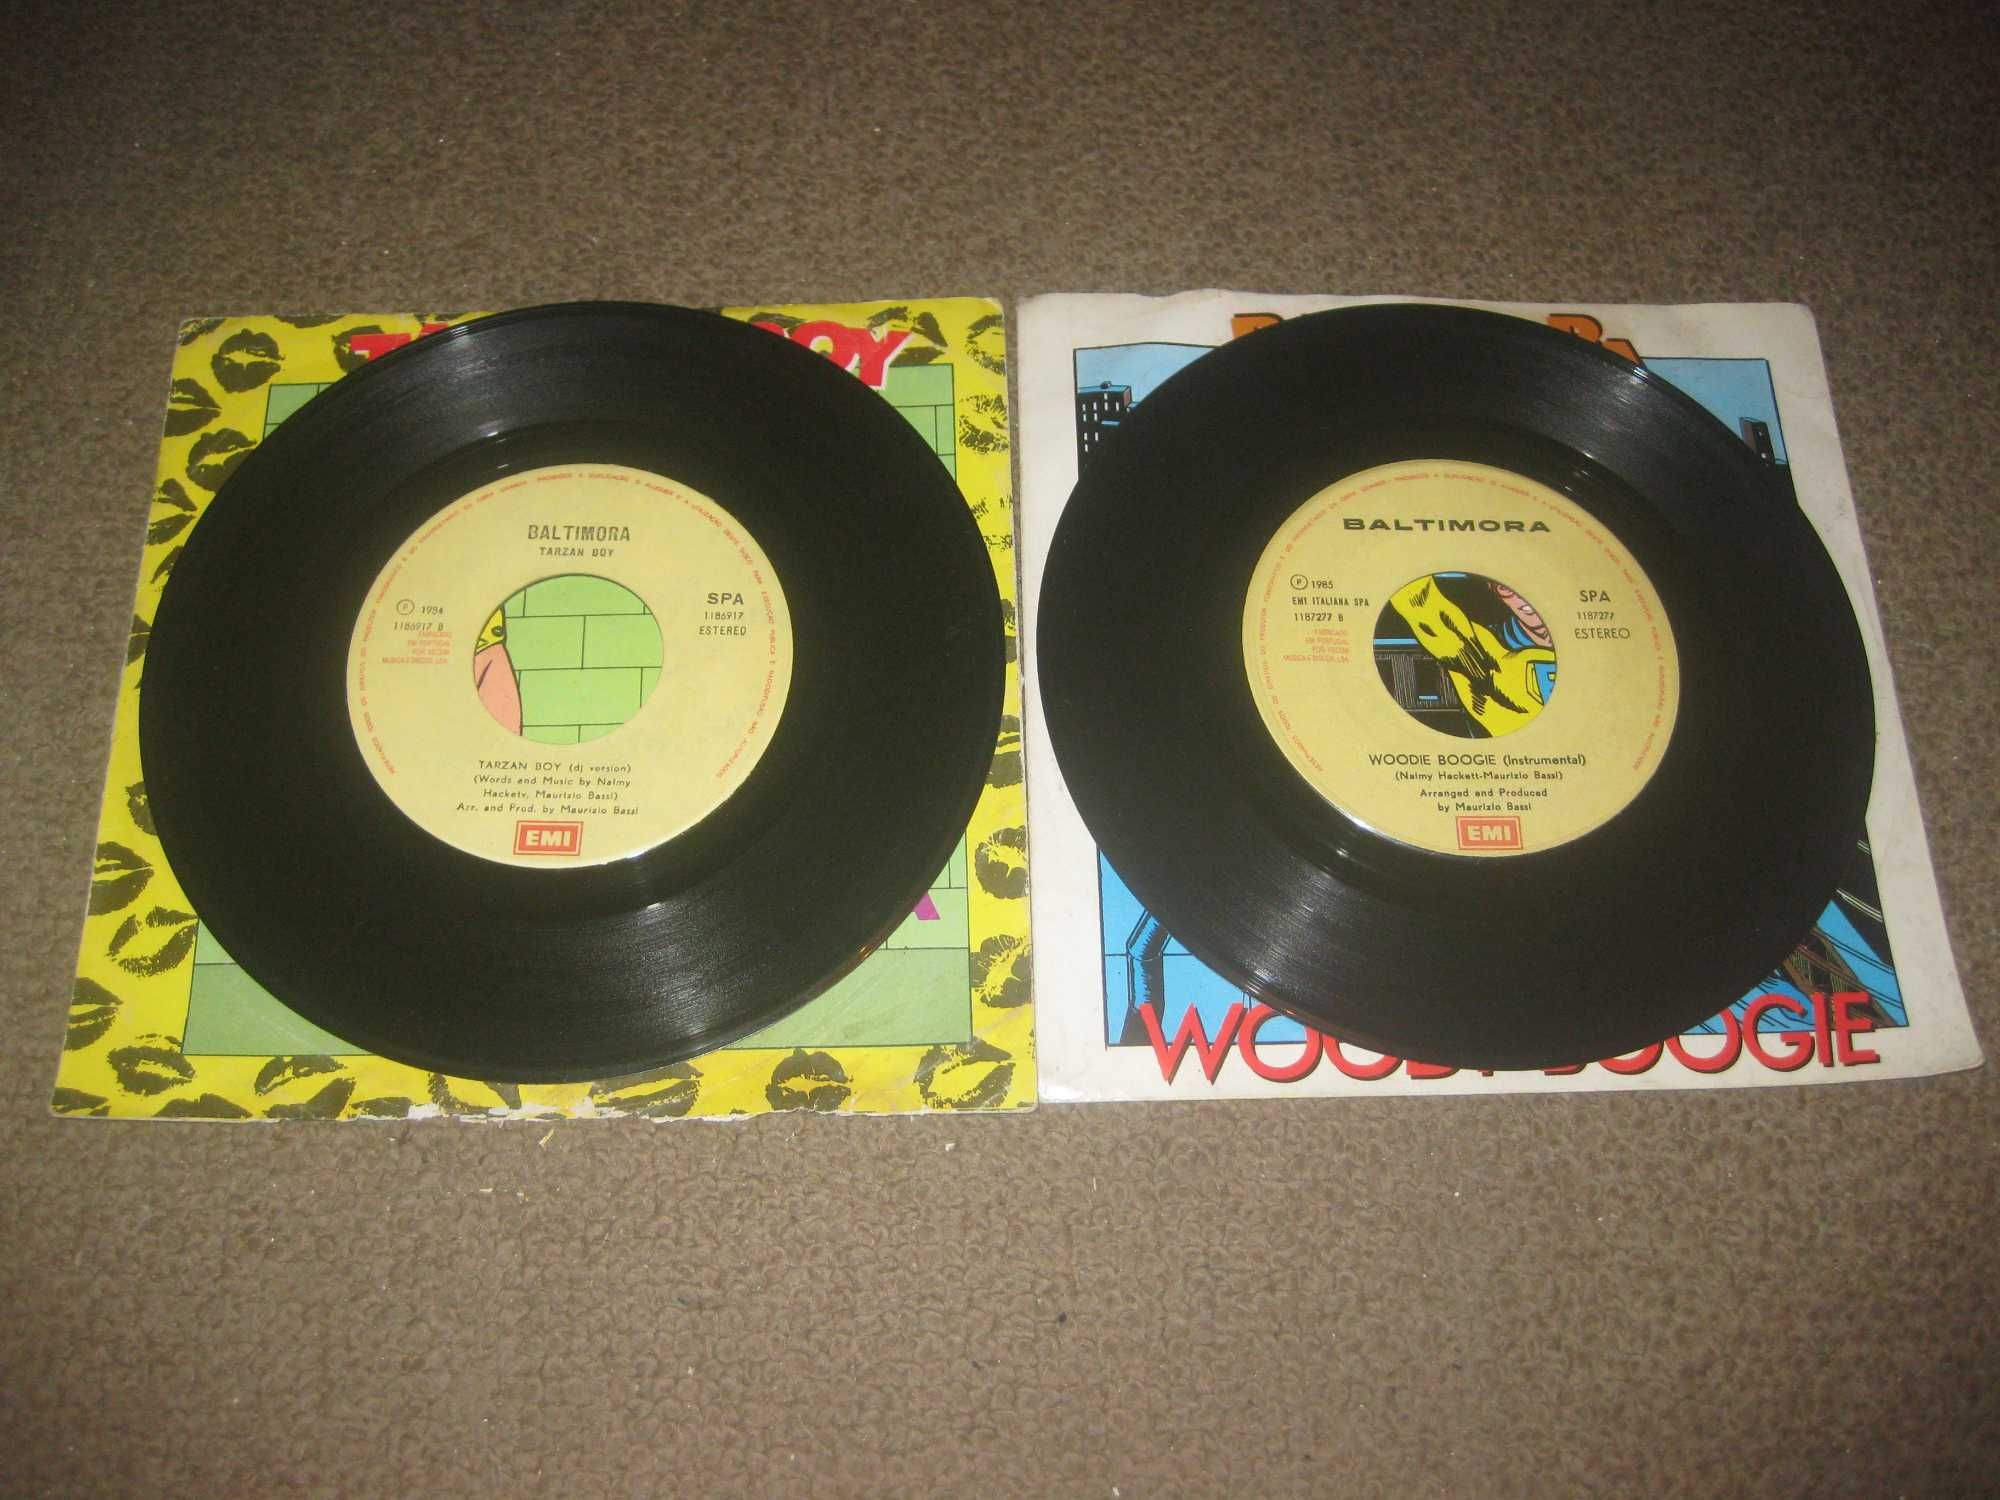 2 Discos em Vinil Single 45 rpm dos Baltimora